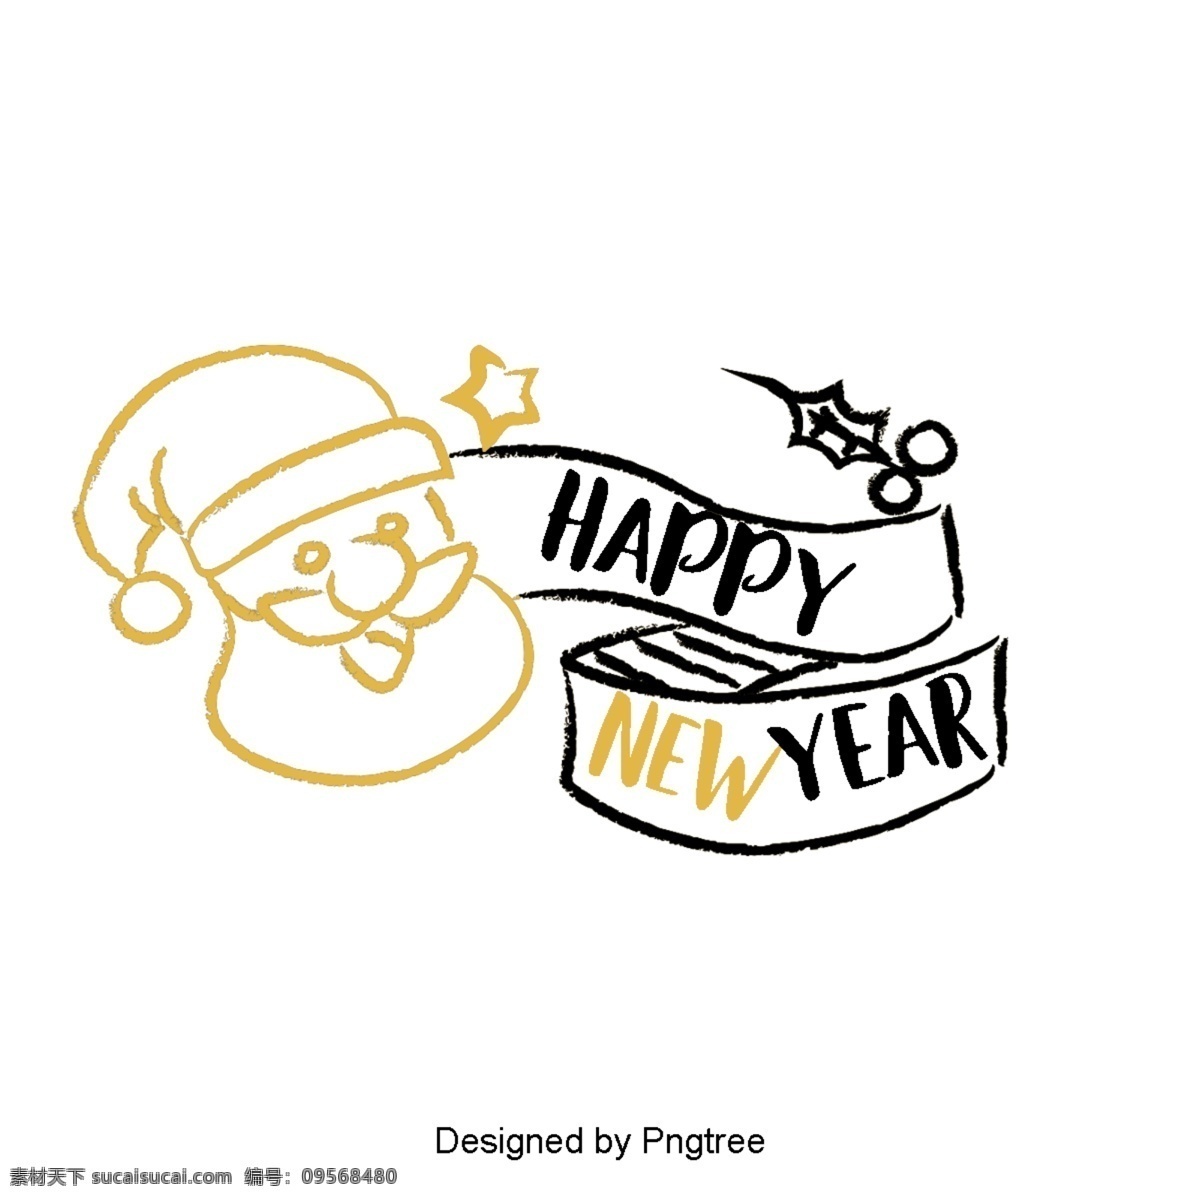 新 年 英国 字体 装饰 金色 黑色 新年 2019 二千一十九 圣诞 彩带 树 礼品 英语 庆祝春节